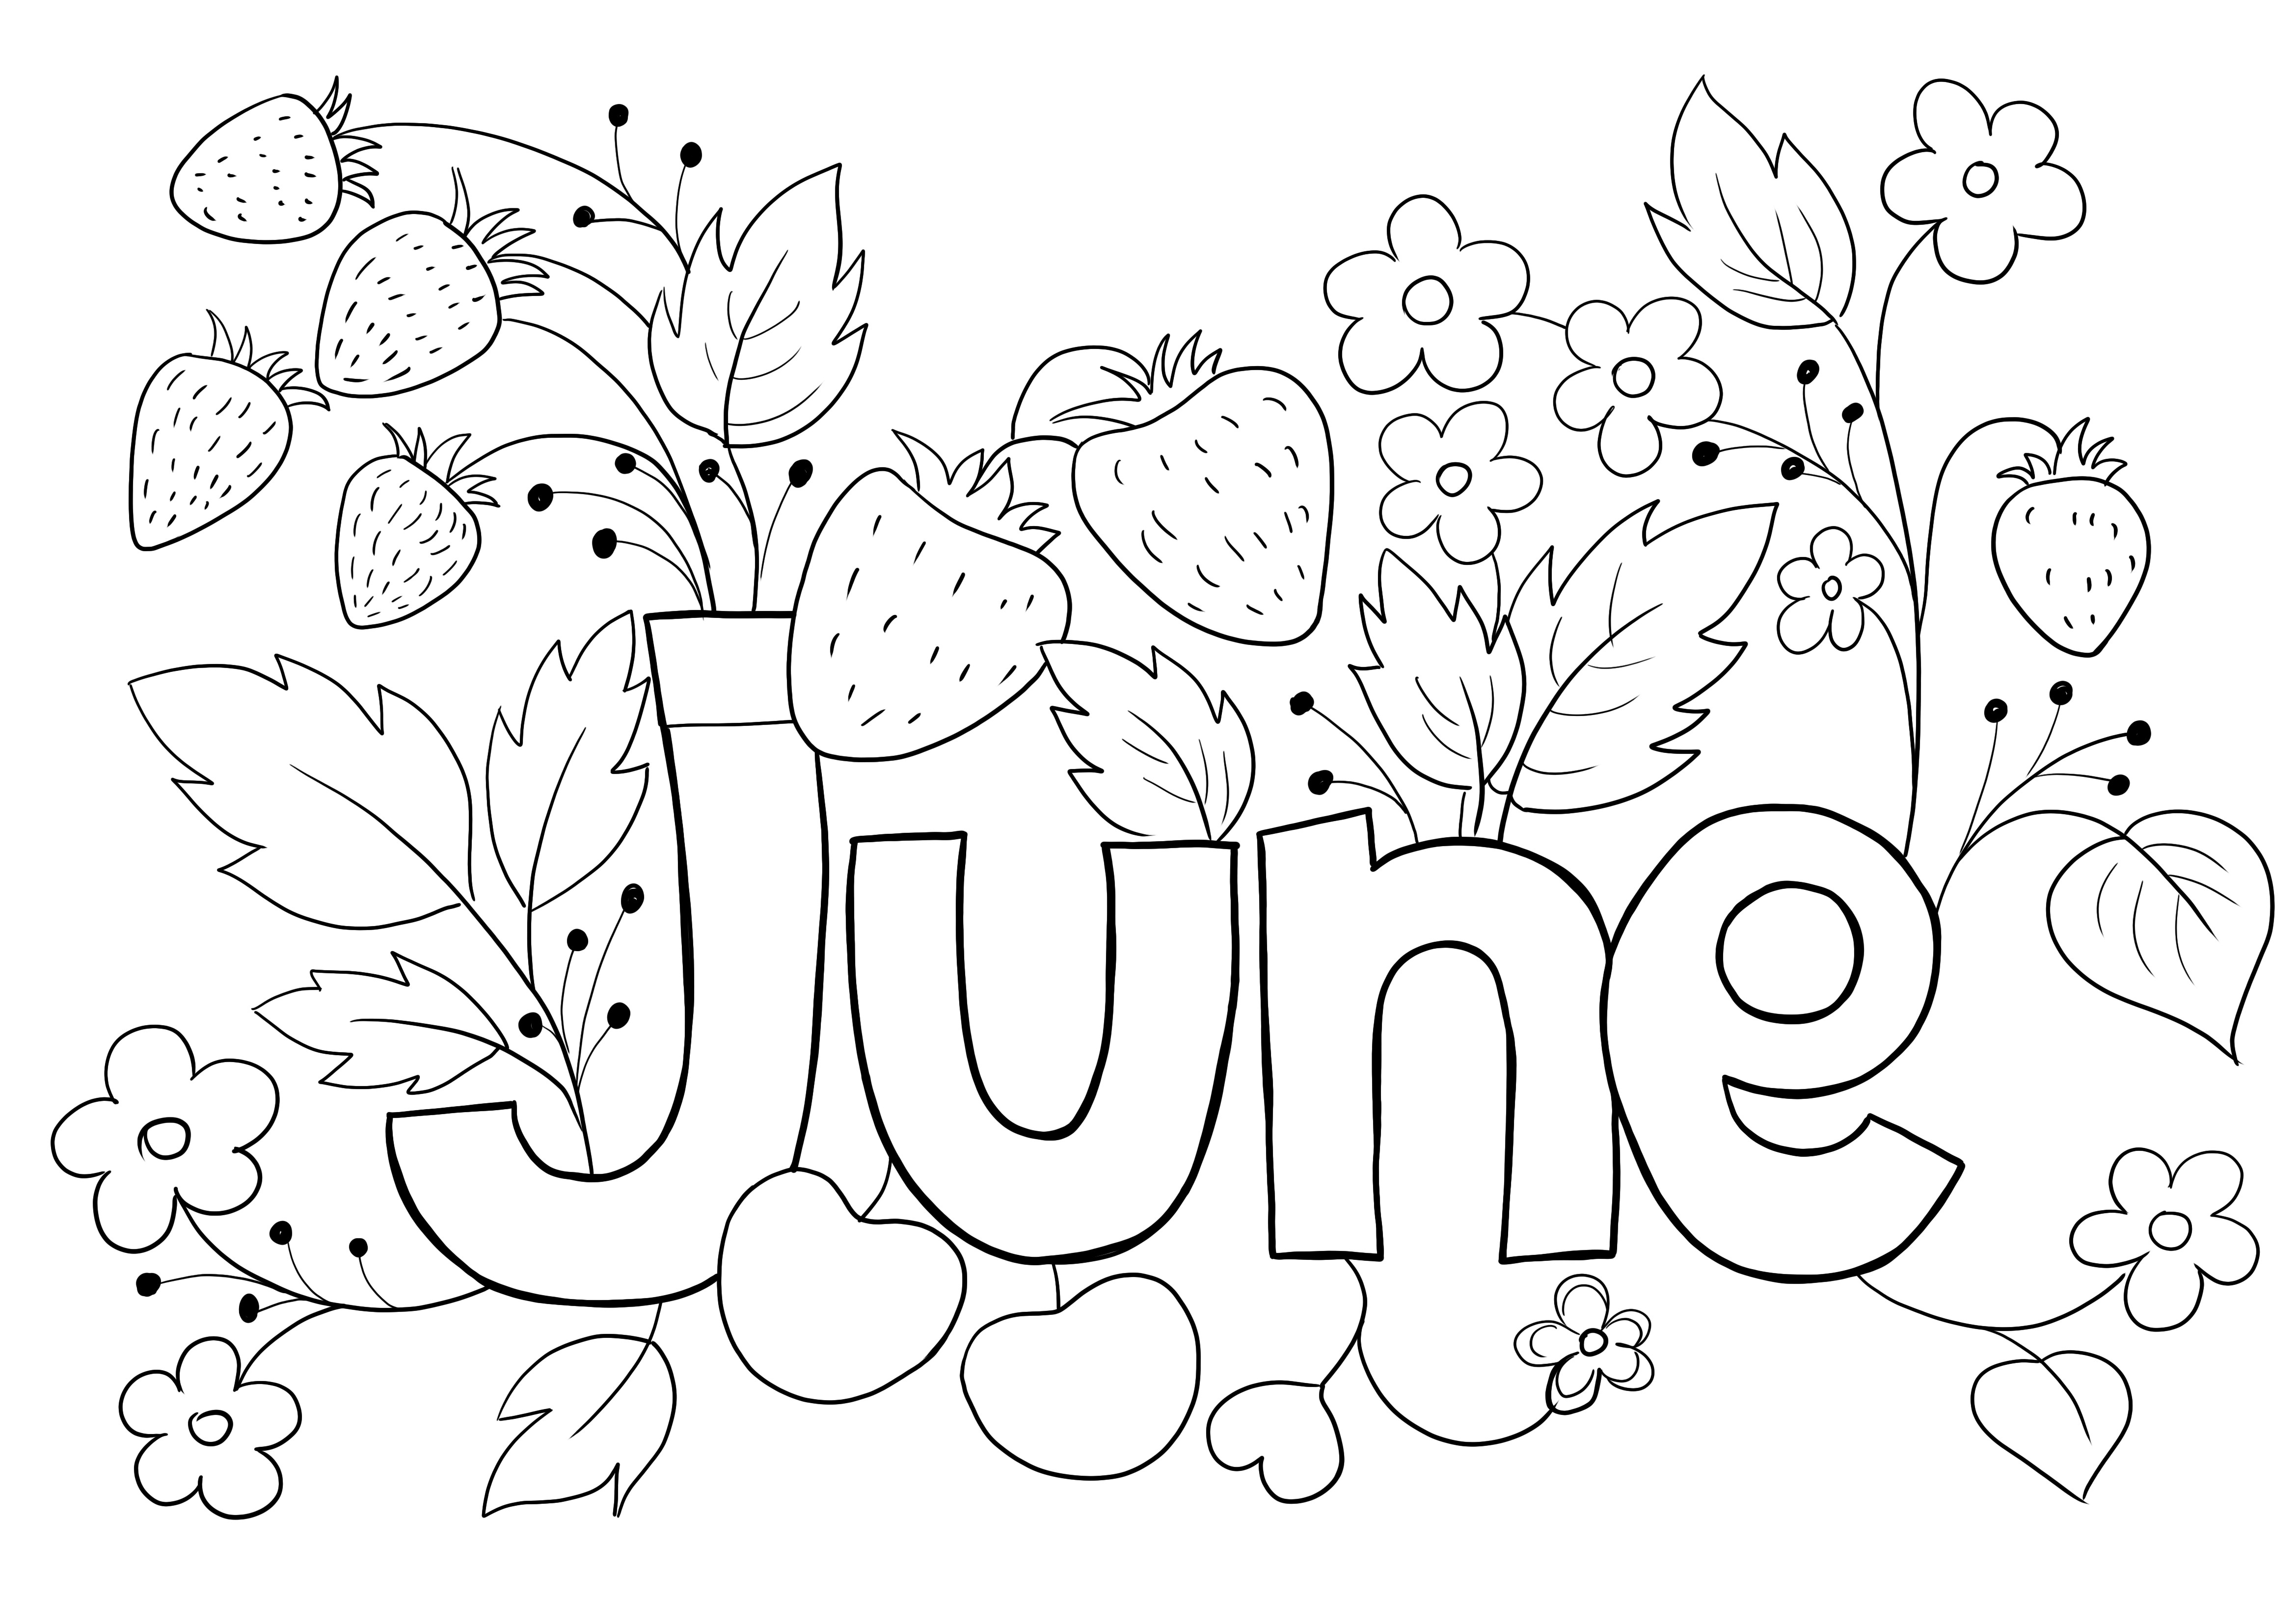 Yaz sezonu Haziran ayı boyama resmi ücretsiz yazdırın